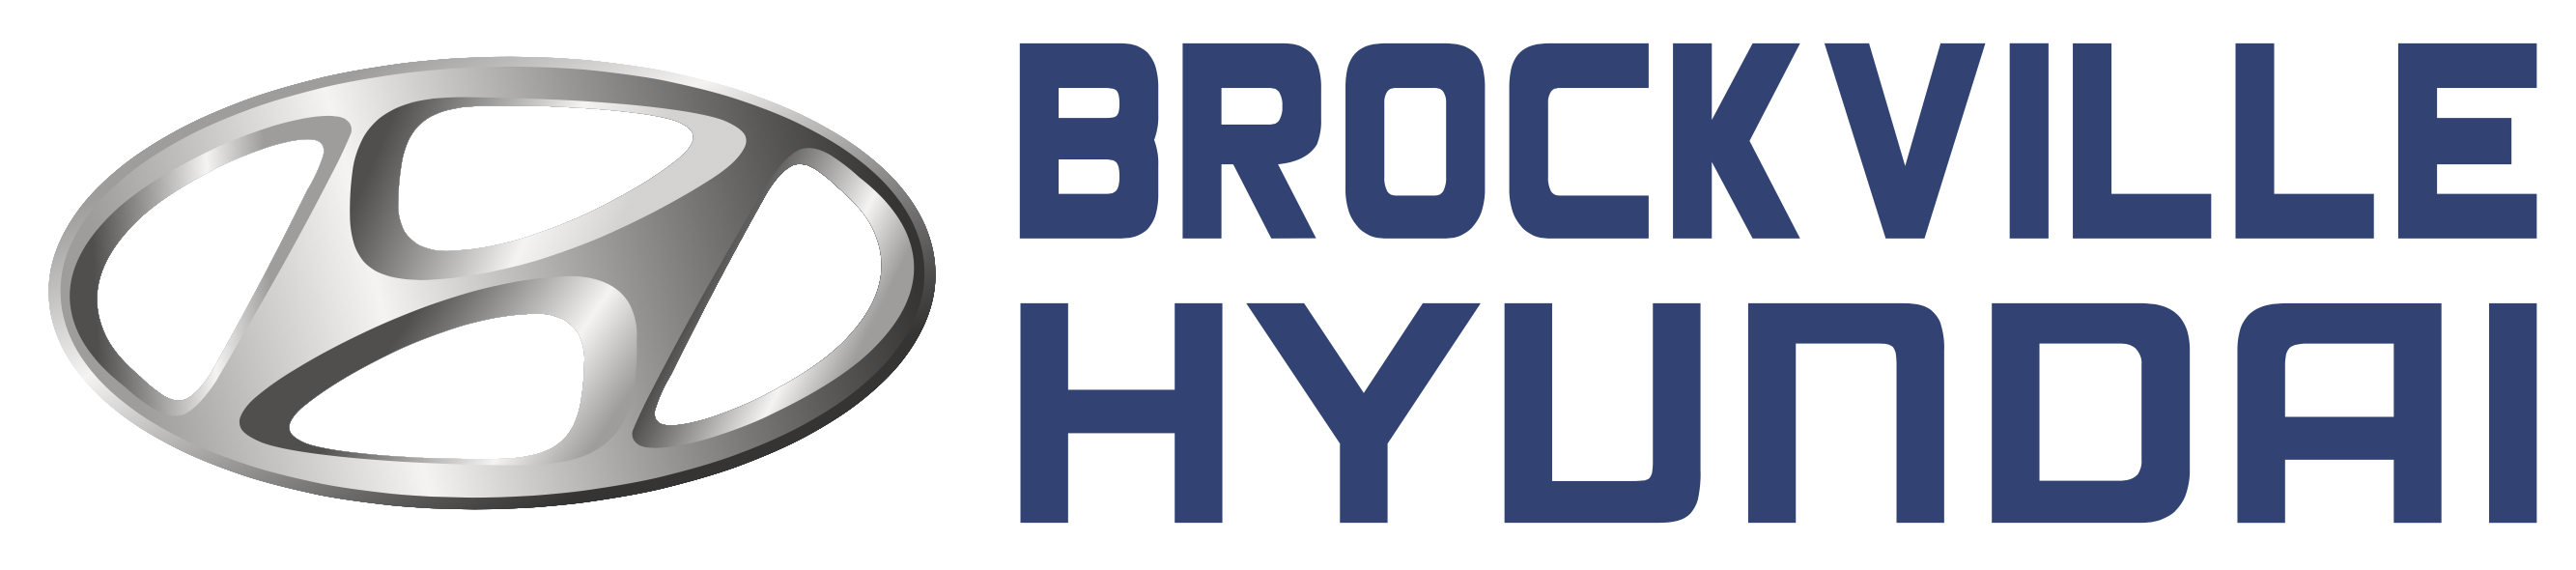 Brockville Hyundai